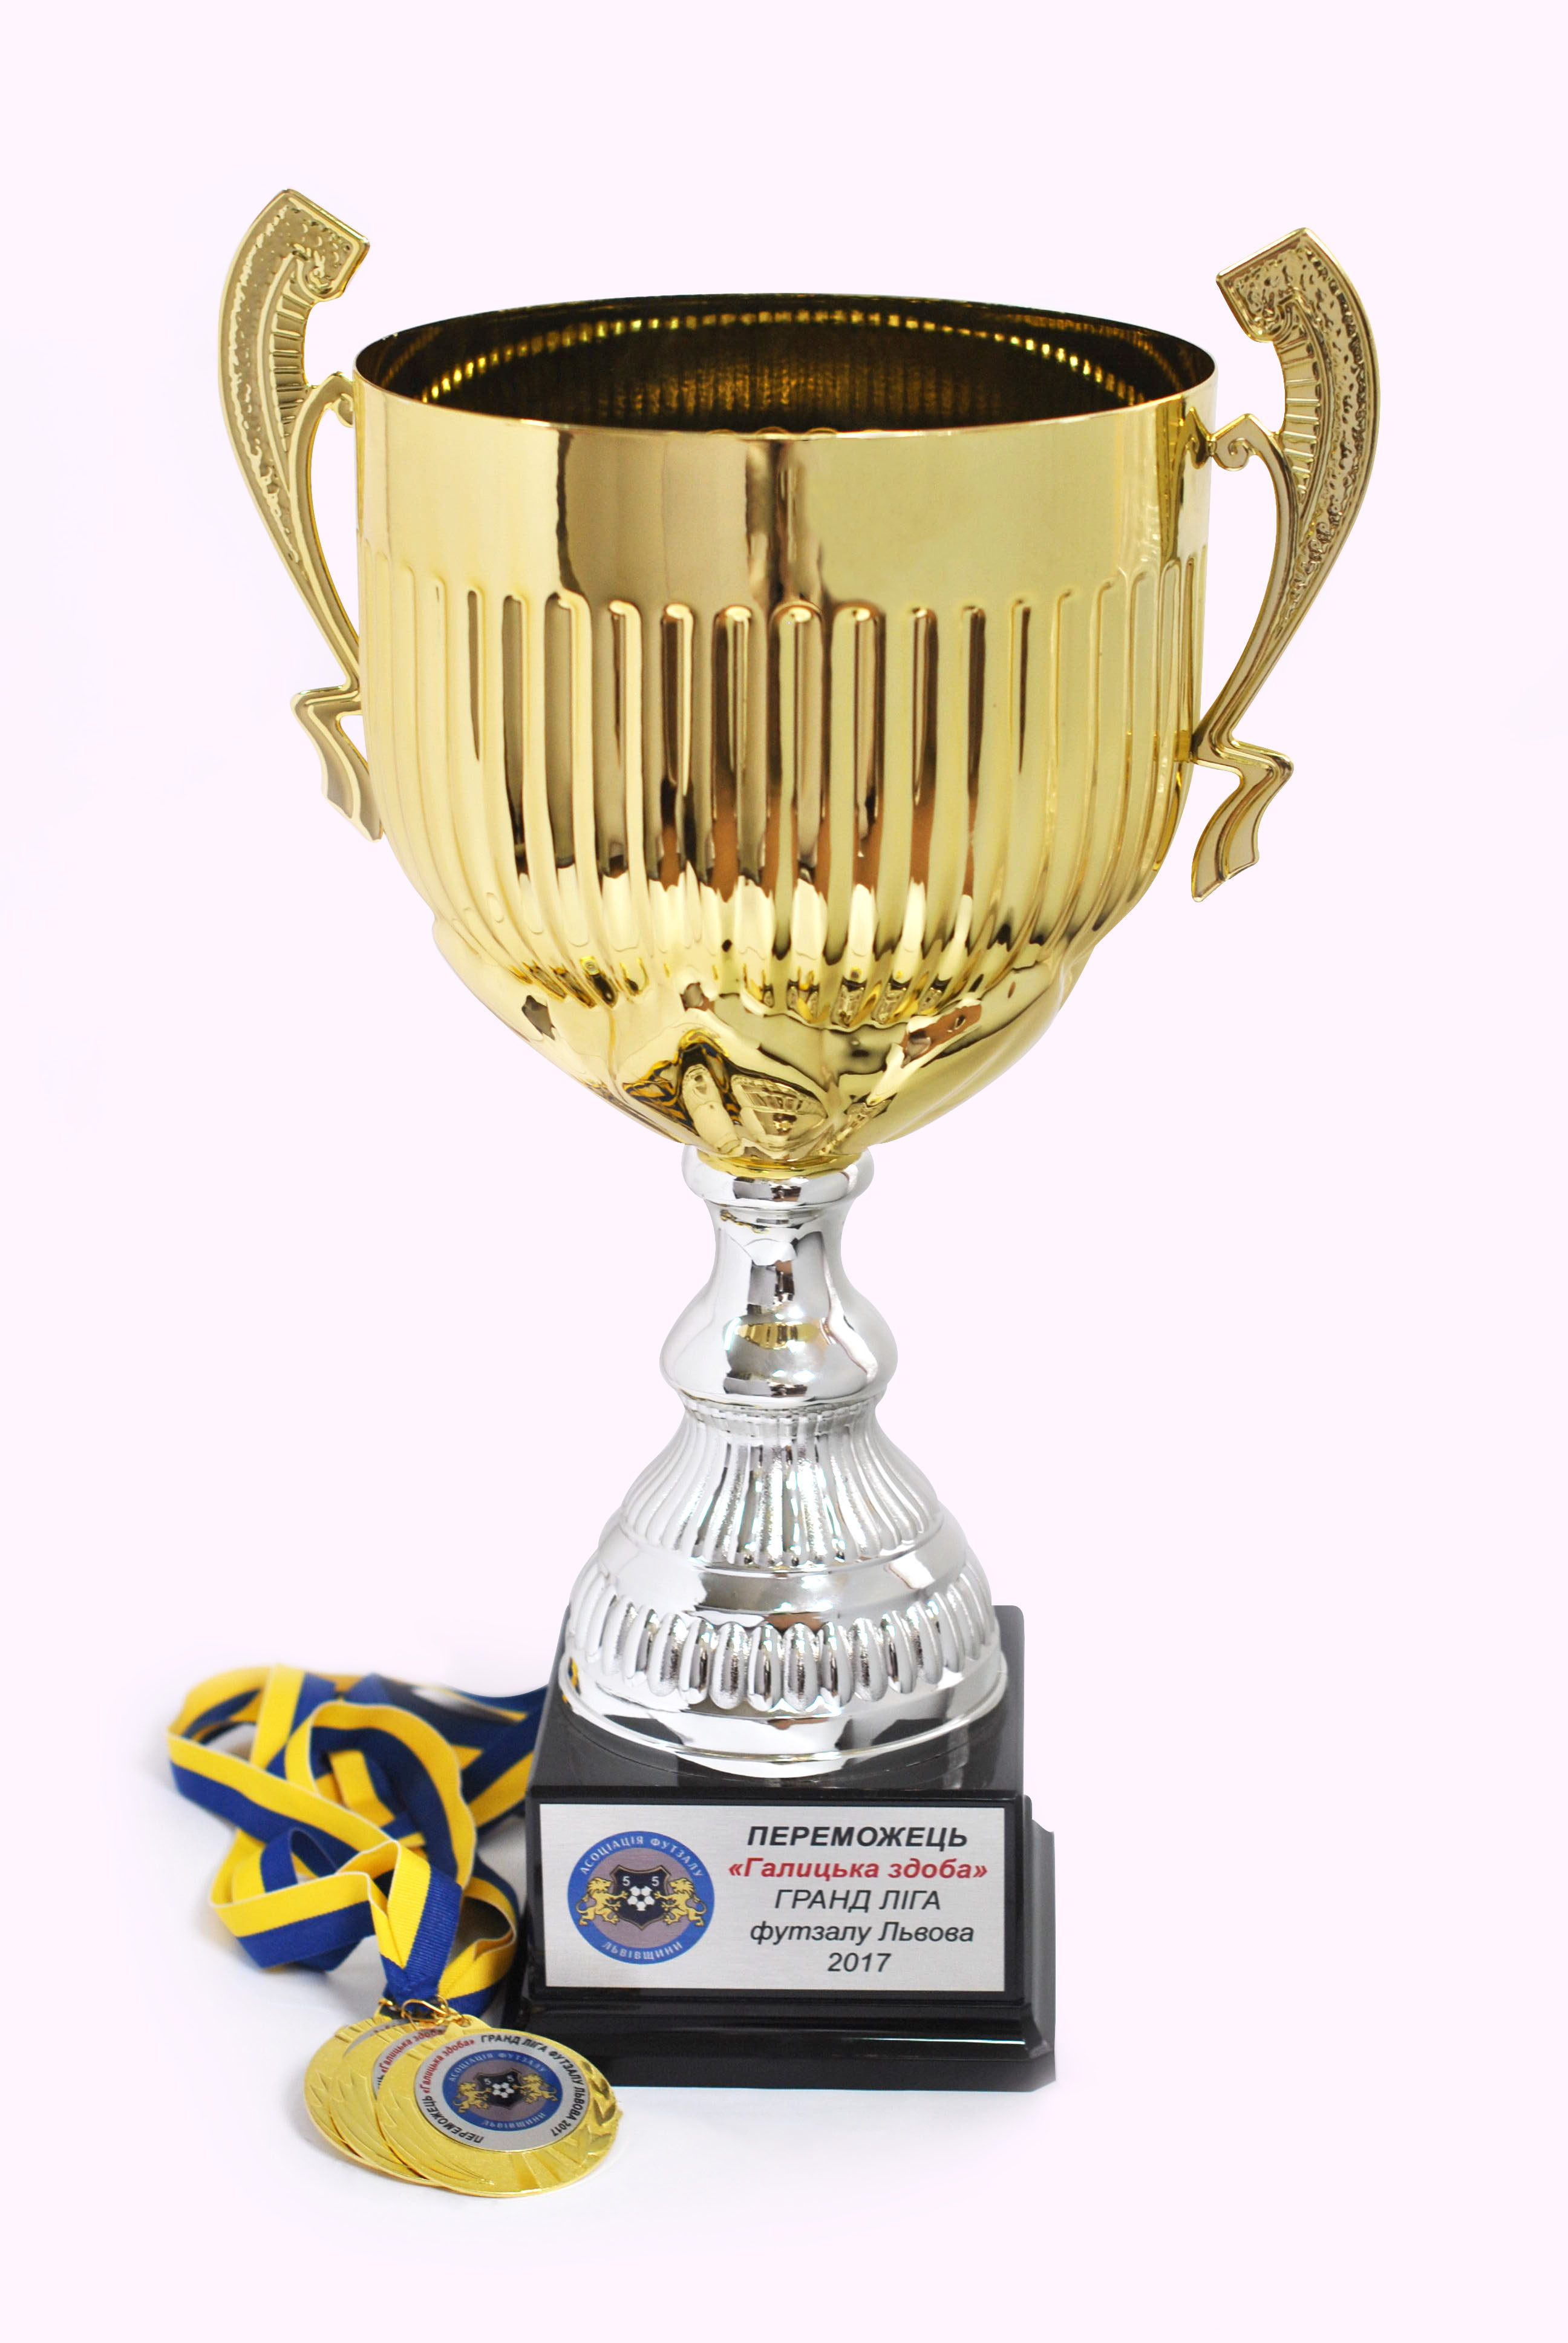 Чемпіонський кубок футбольної команди «Галицька здоба» за І місце у Гранд лізі з міні-футболу у літньому сезоні 2017. За результатами змагань двоє гравців «Галицької здоби» стали кращими бомбардирами літньої ліги.